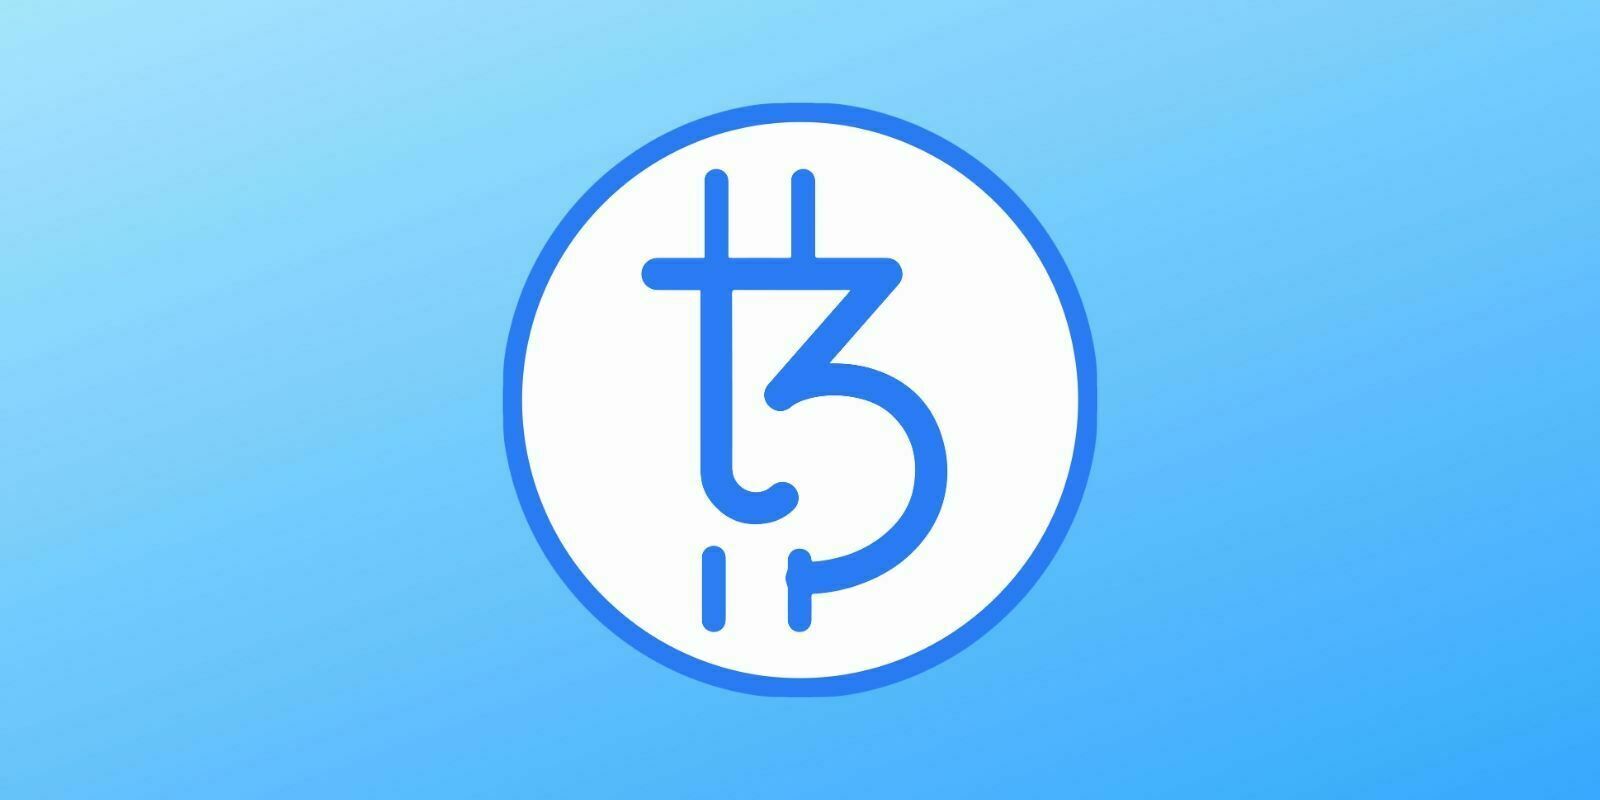 tzBTC : un token adossé au Bitcoin (BTC) sur la blockchain Tezos